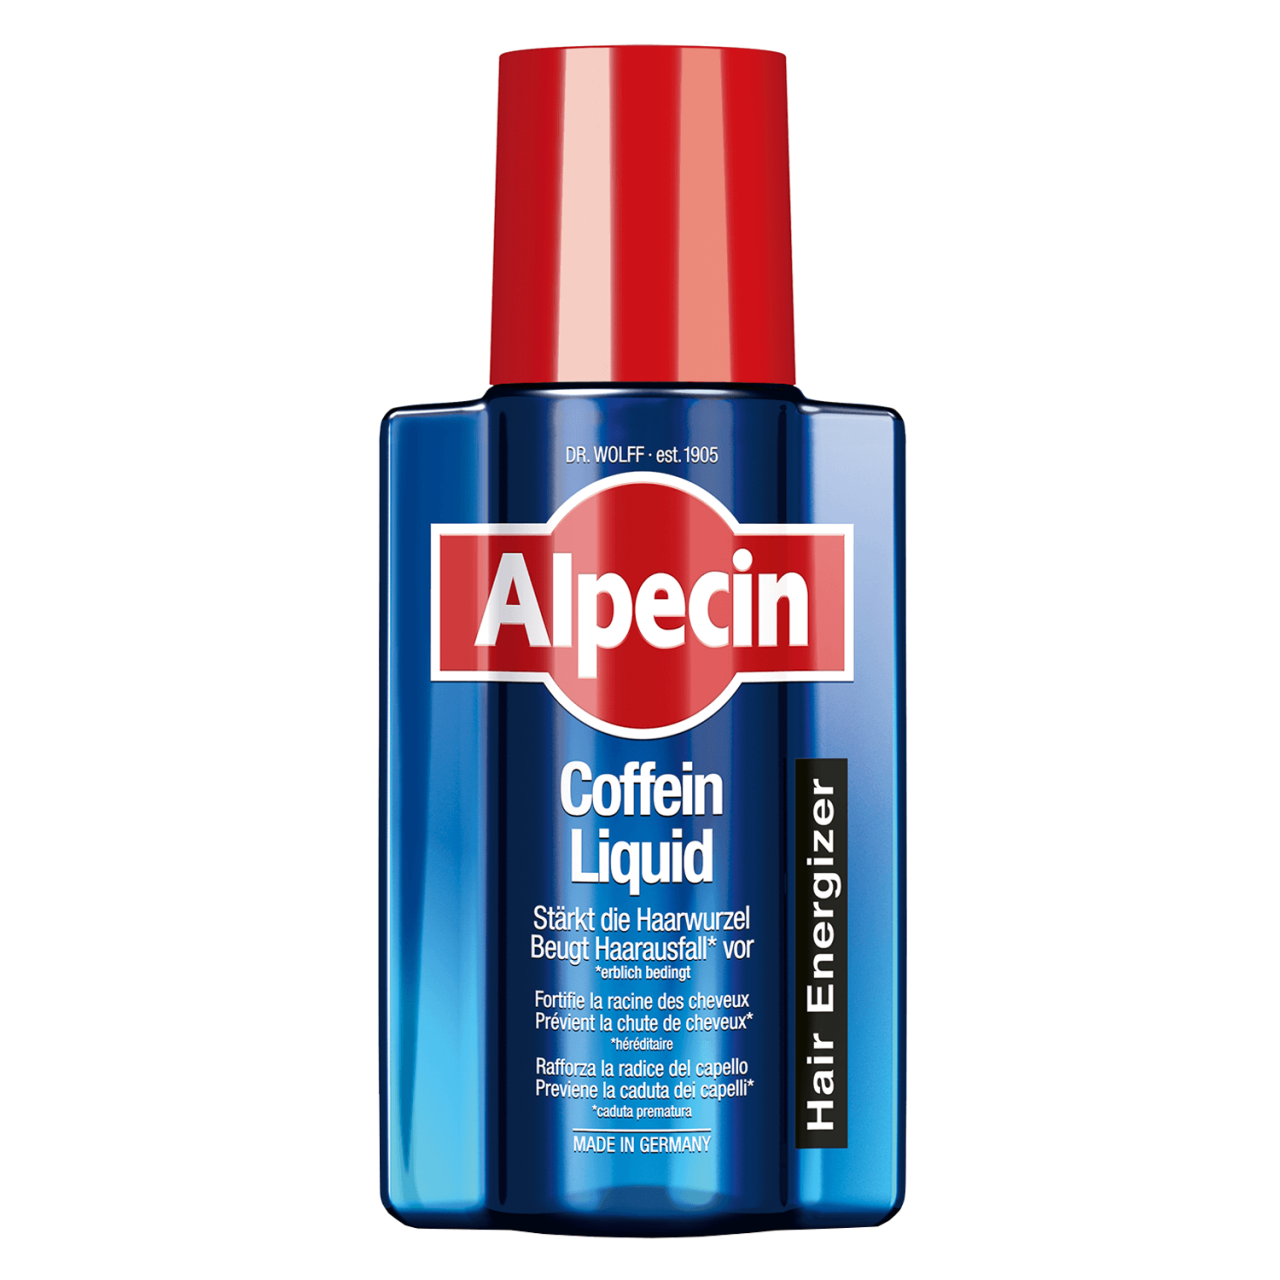 Alpecin - Coffein Liquid von Alpecin